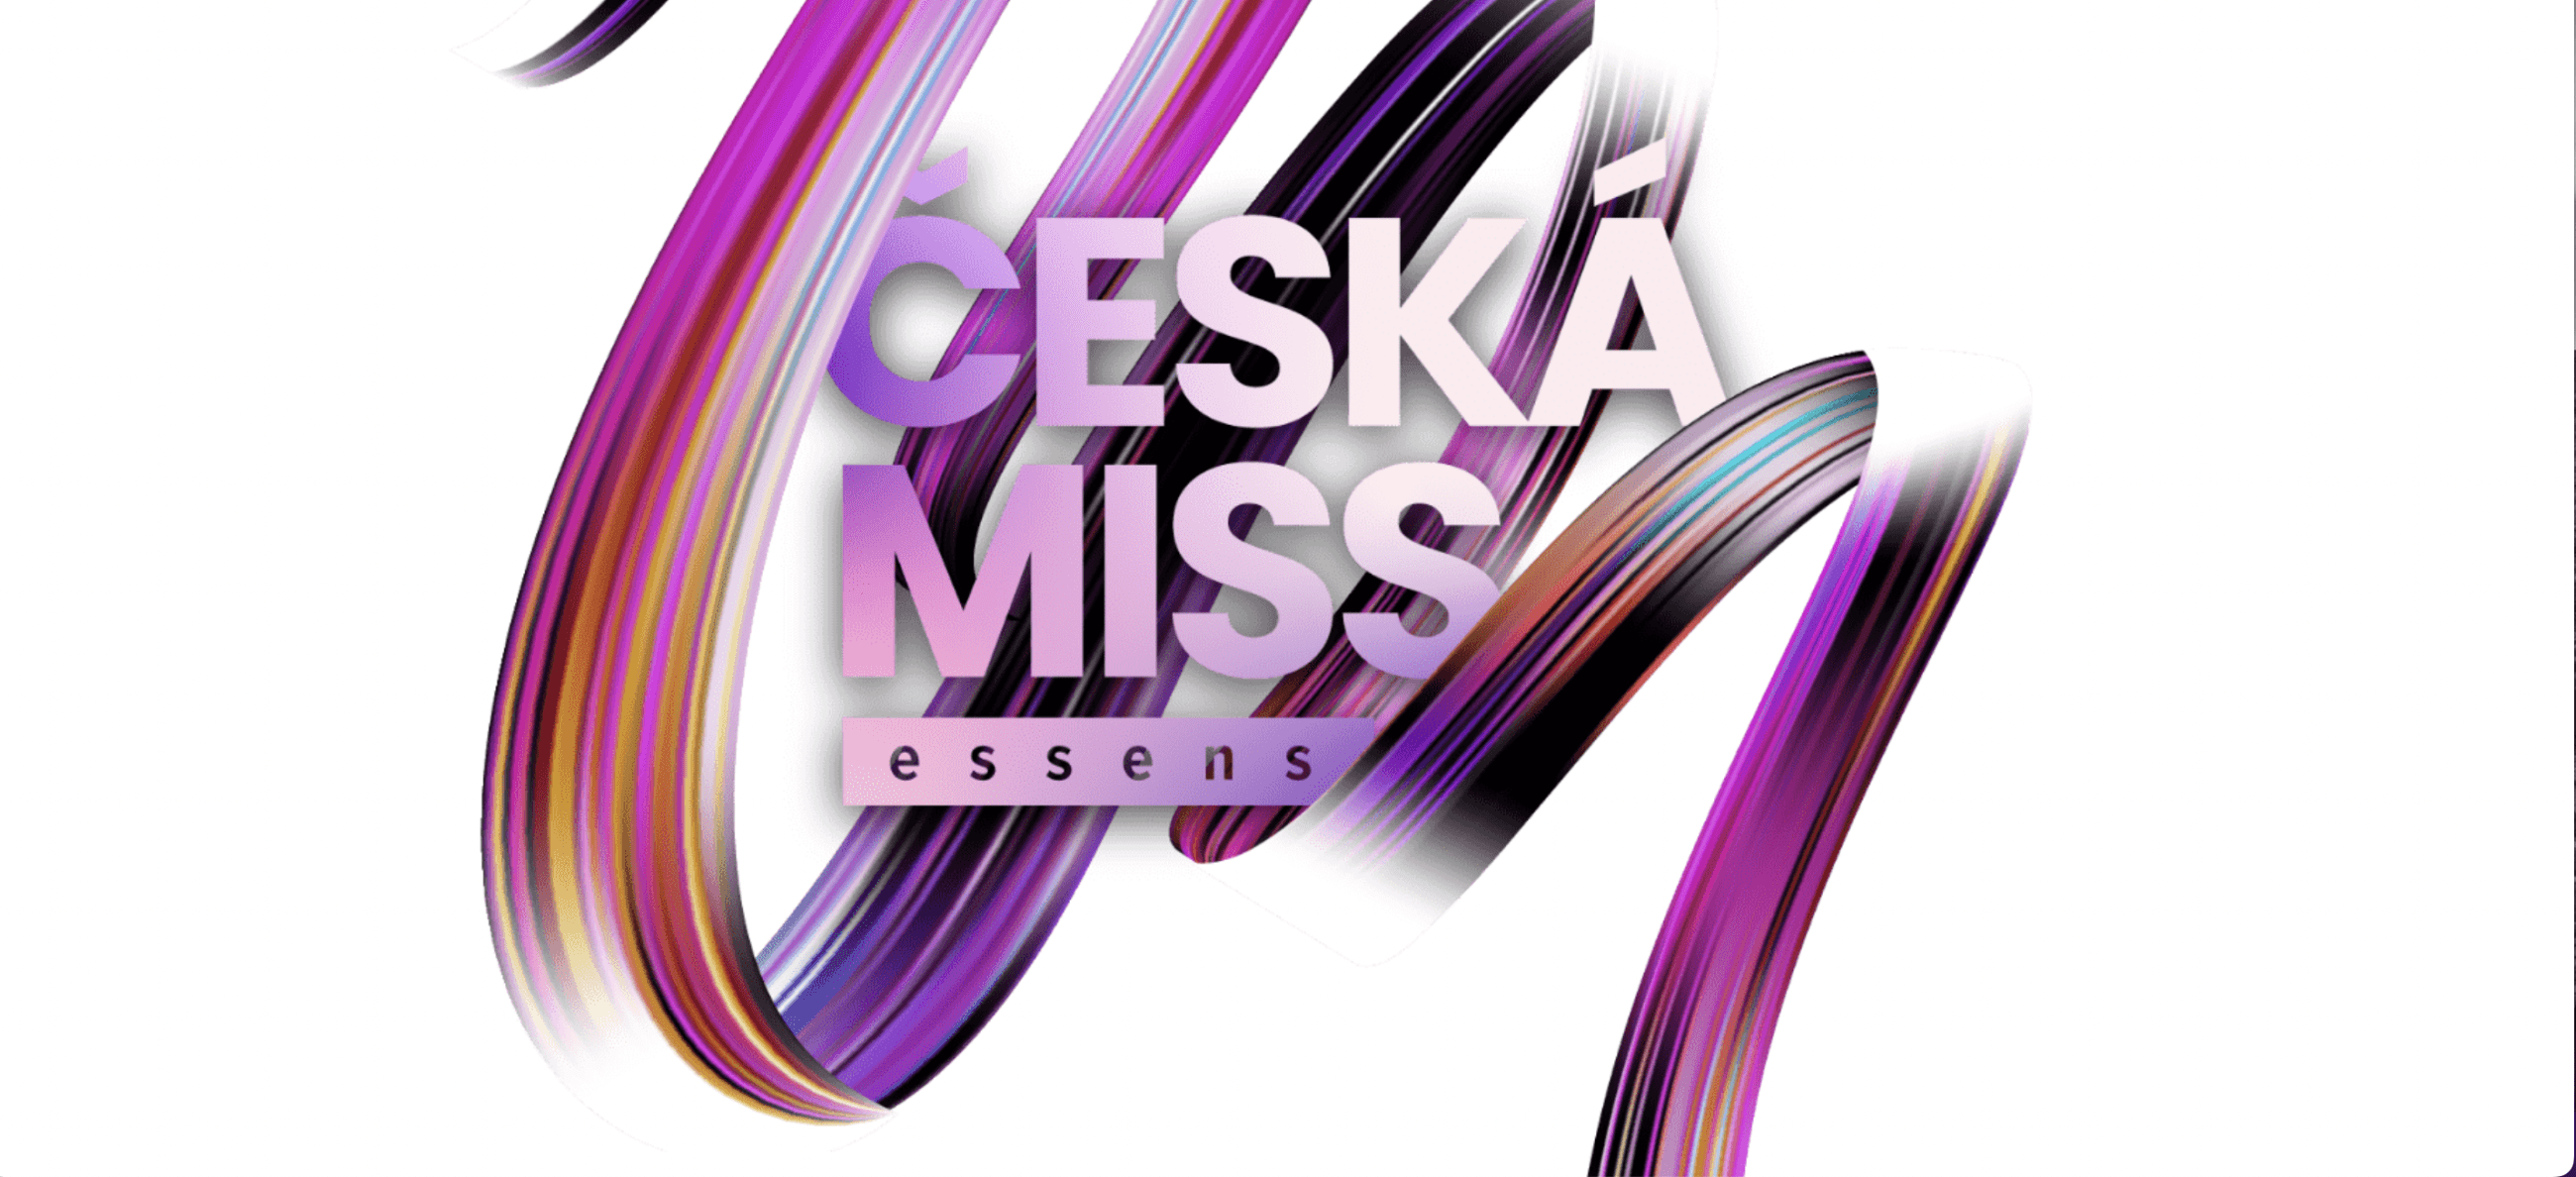 (c) Ceskamiss.cz